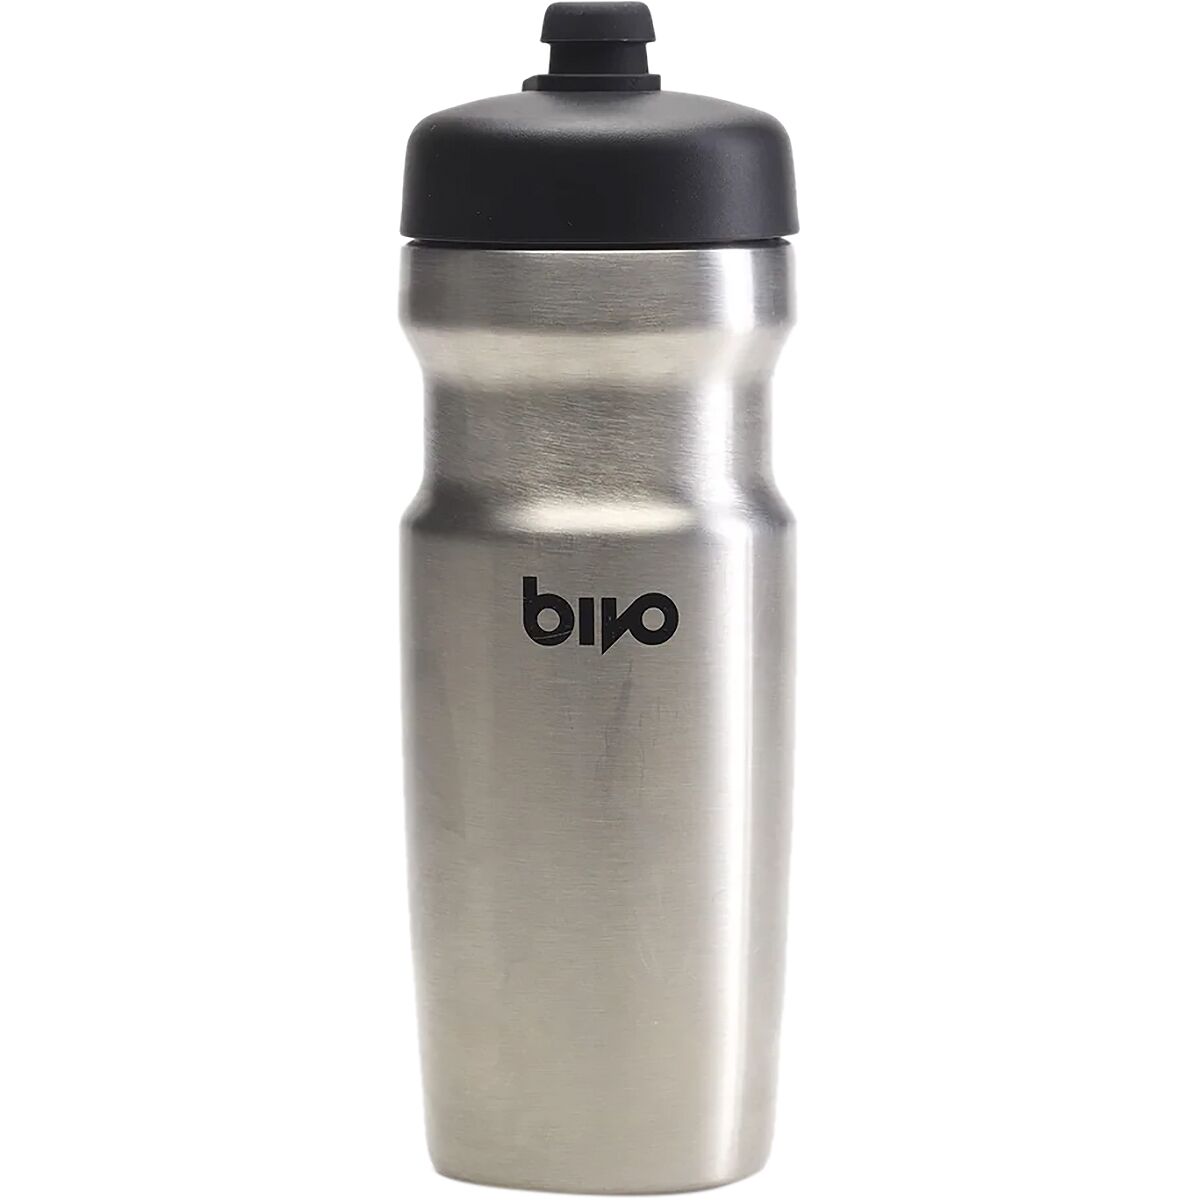 Bivo Trio Mini 17oz Insulated Bottle